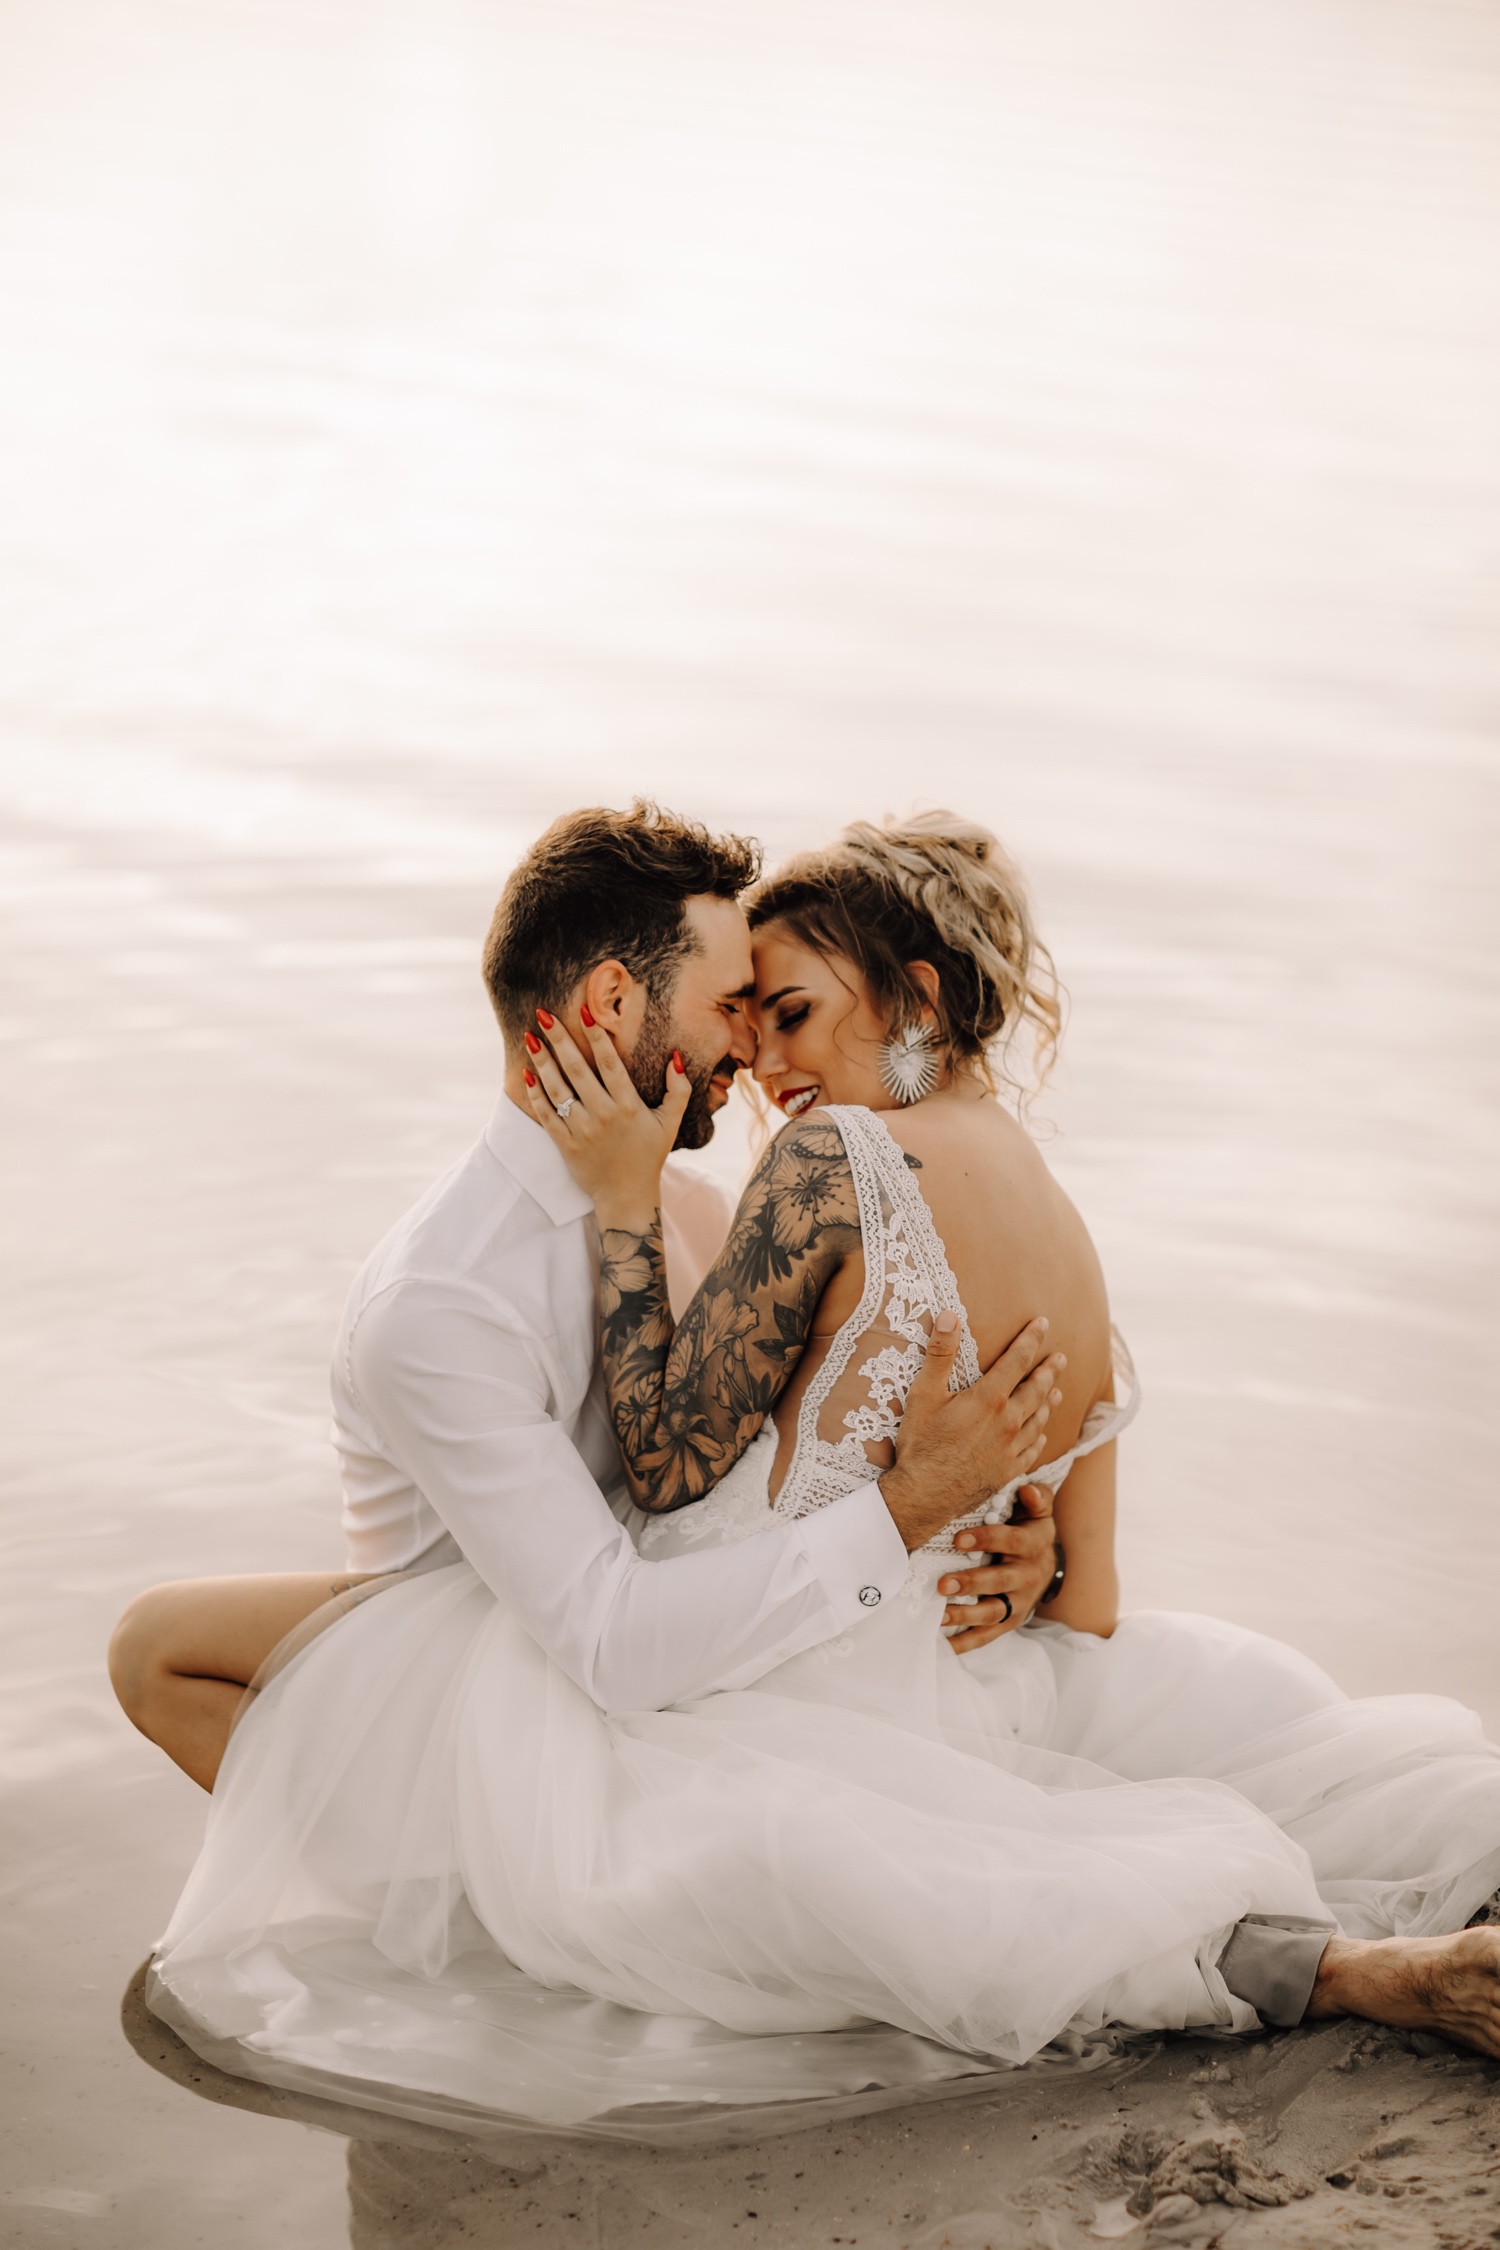 Huwelijksfotograaf Limburg - bruidspaar gaat in water zitten bij fotoshoot